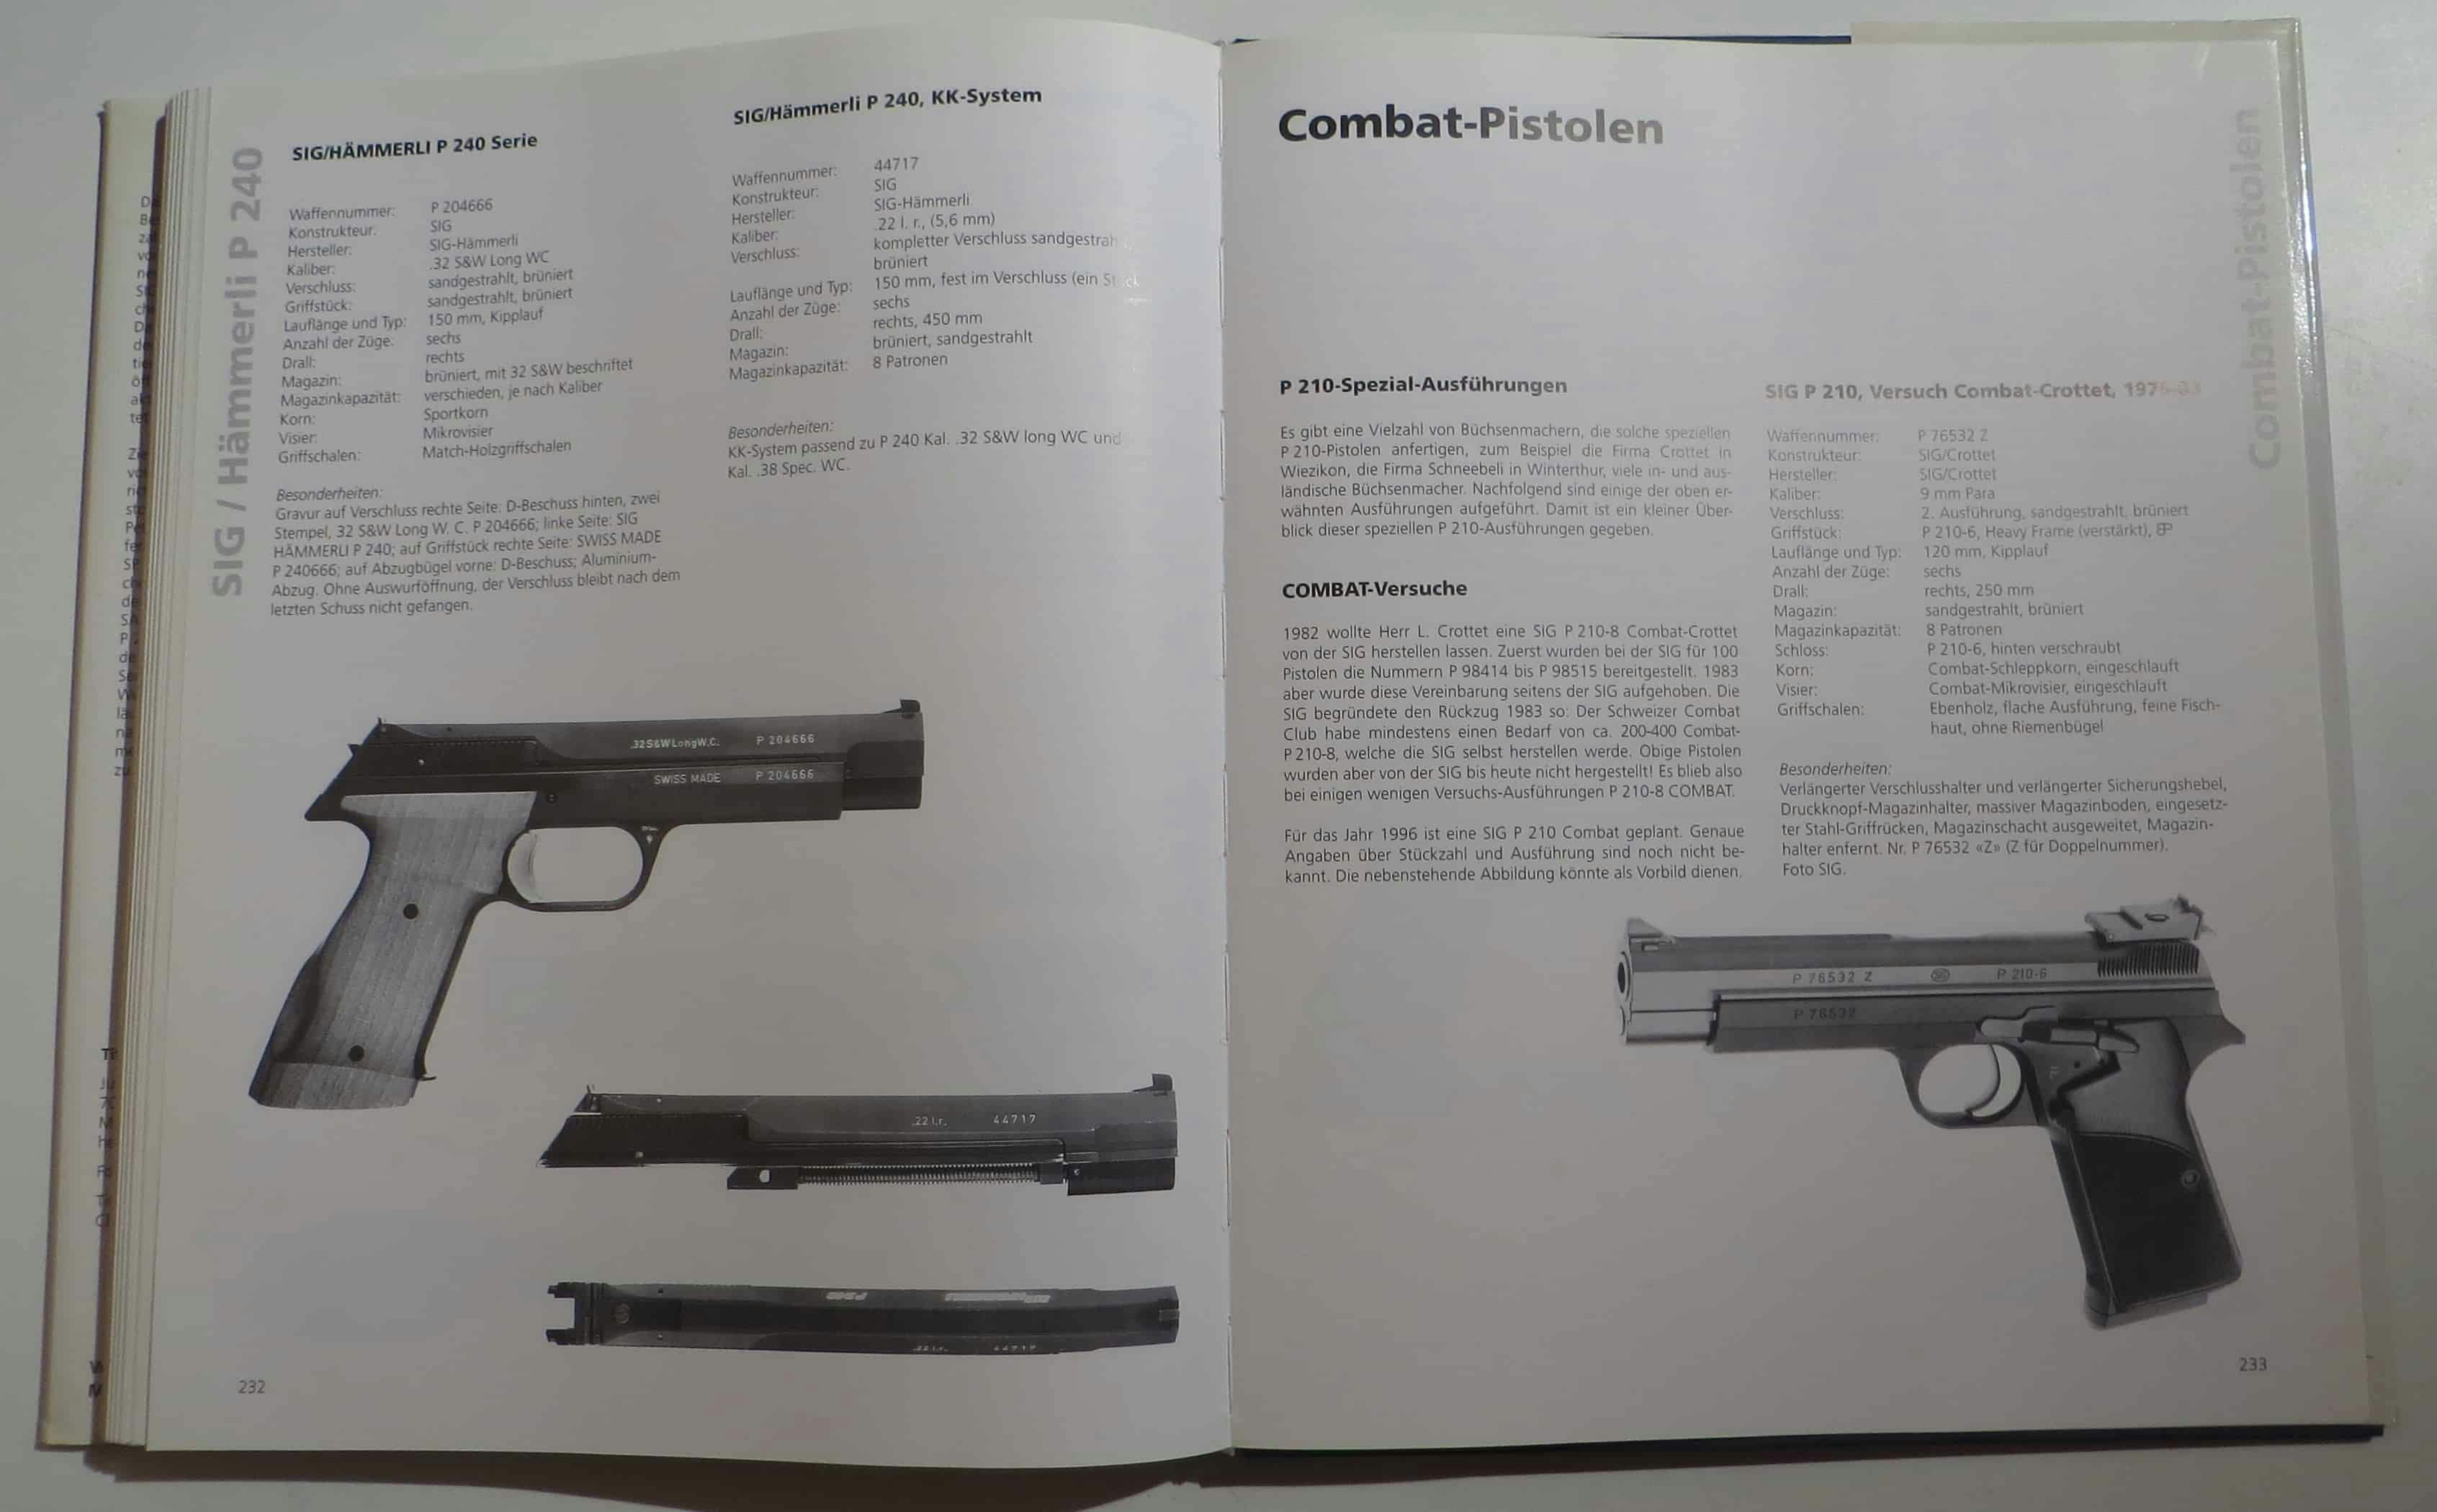 Links die SIG/Hämmerli P240 Sportserie, rechts die Combatpistolen auf Basis der P210.